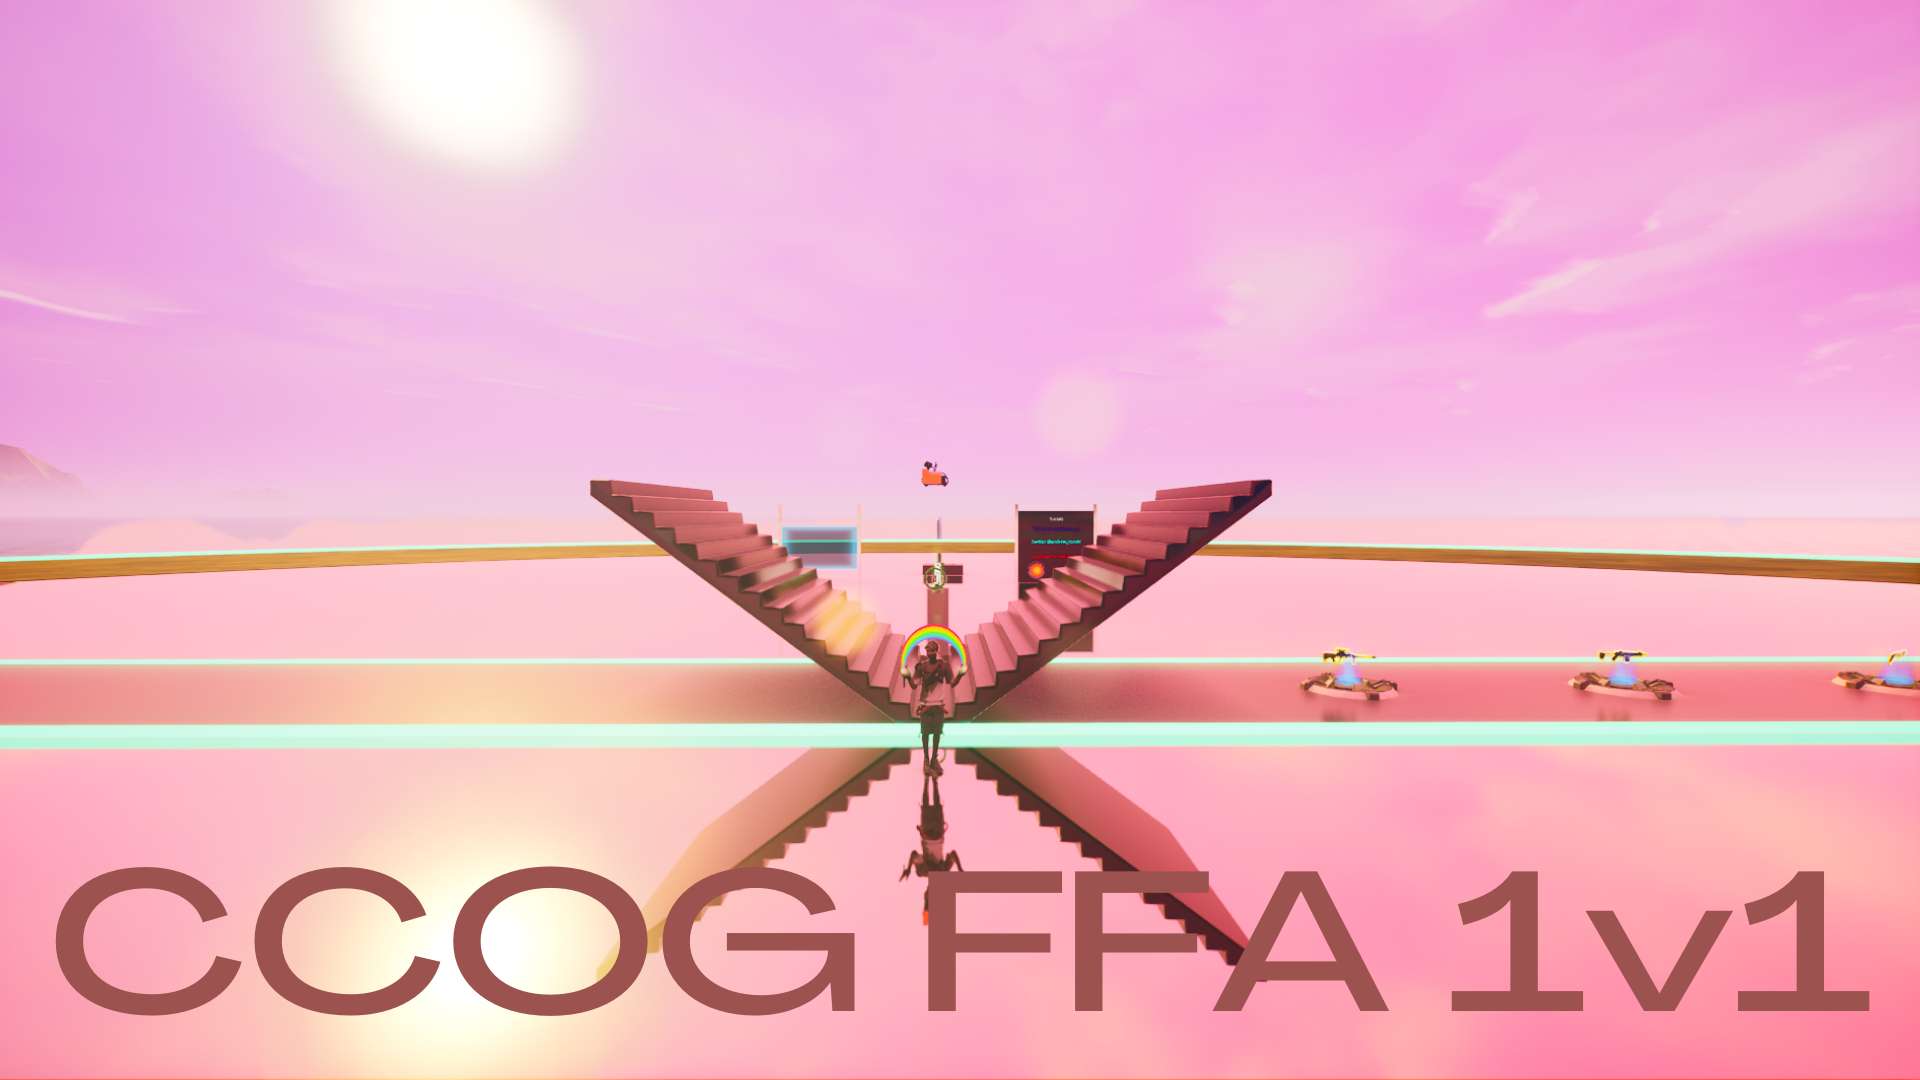 CCOG FFA 1V1